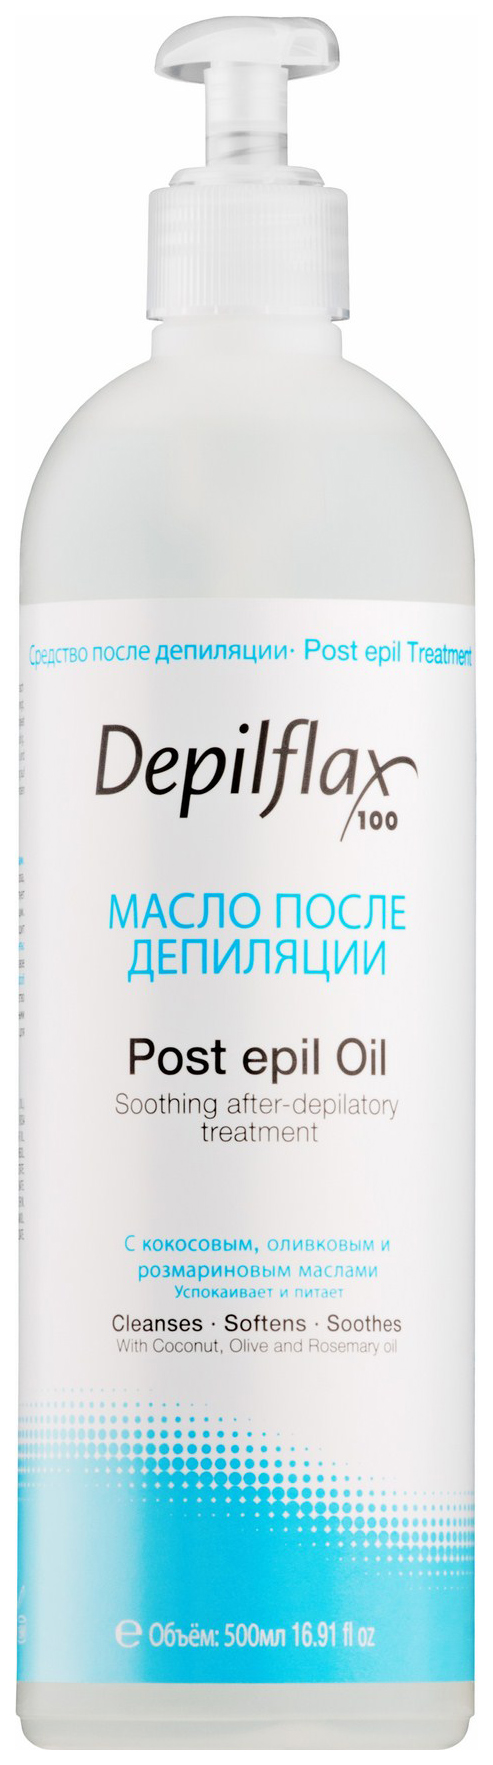 Депилфлакс масло после депиляции